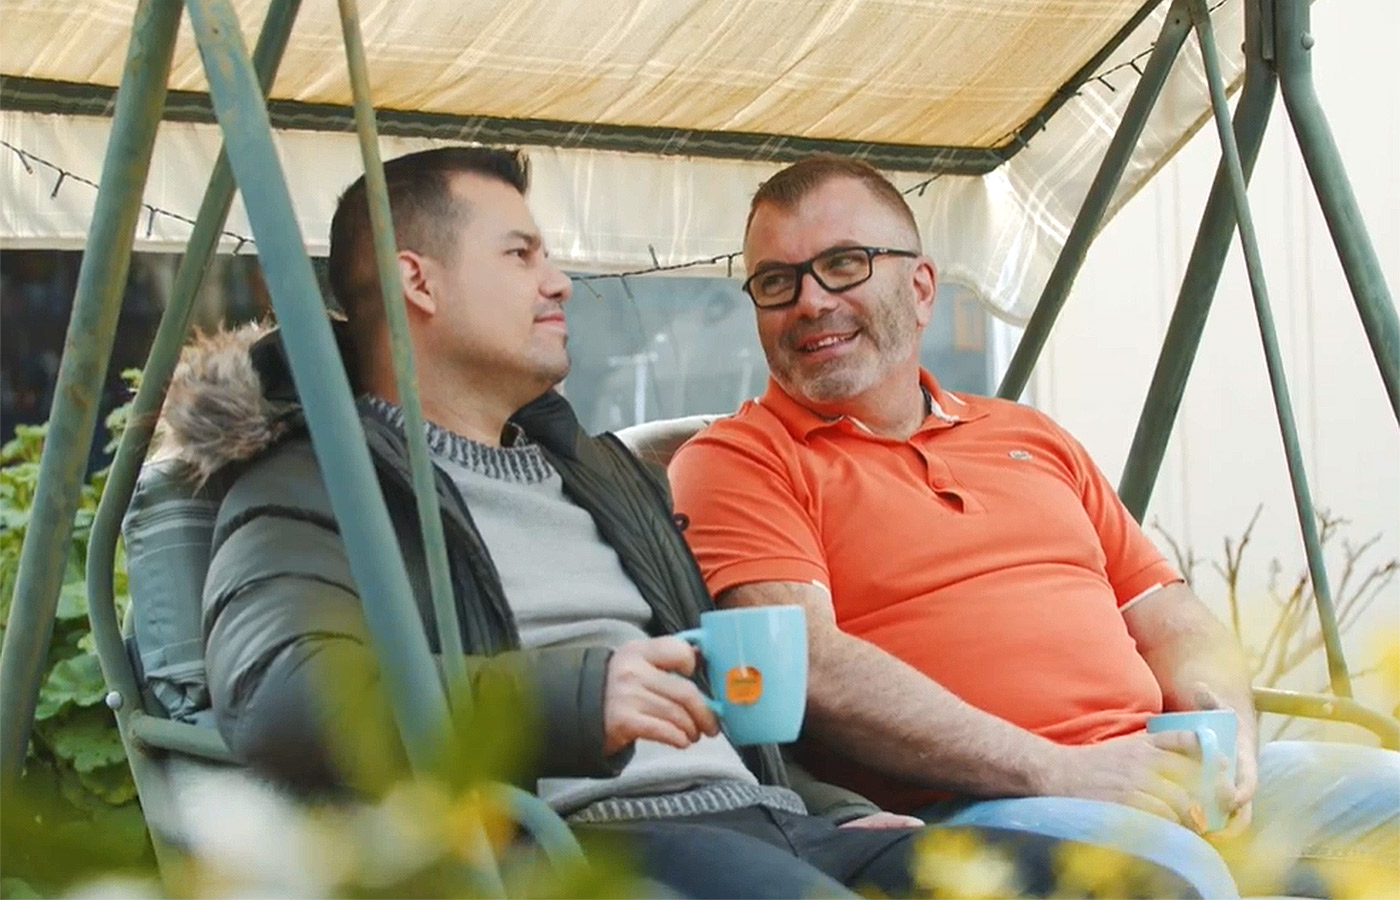 Osia-användaren Adrian och hans vän pratar medan de sitter i en hammock